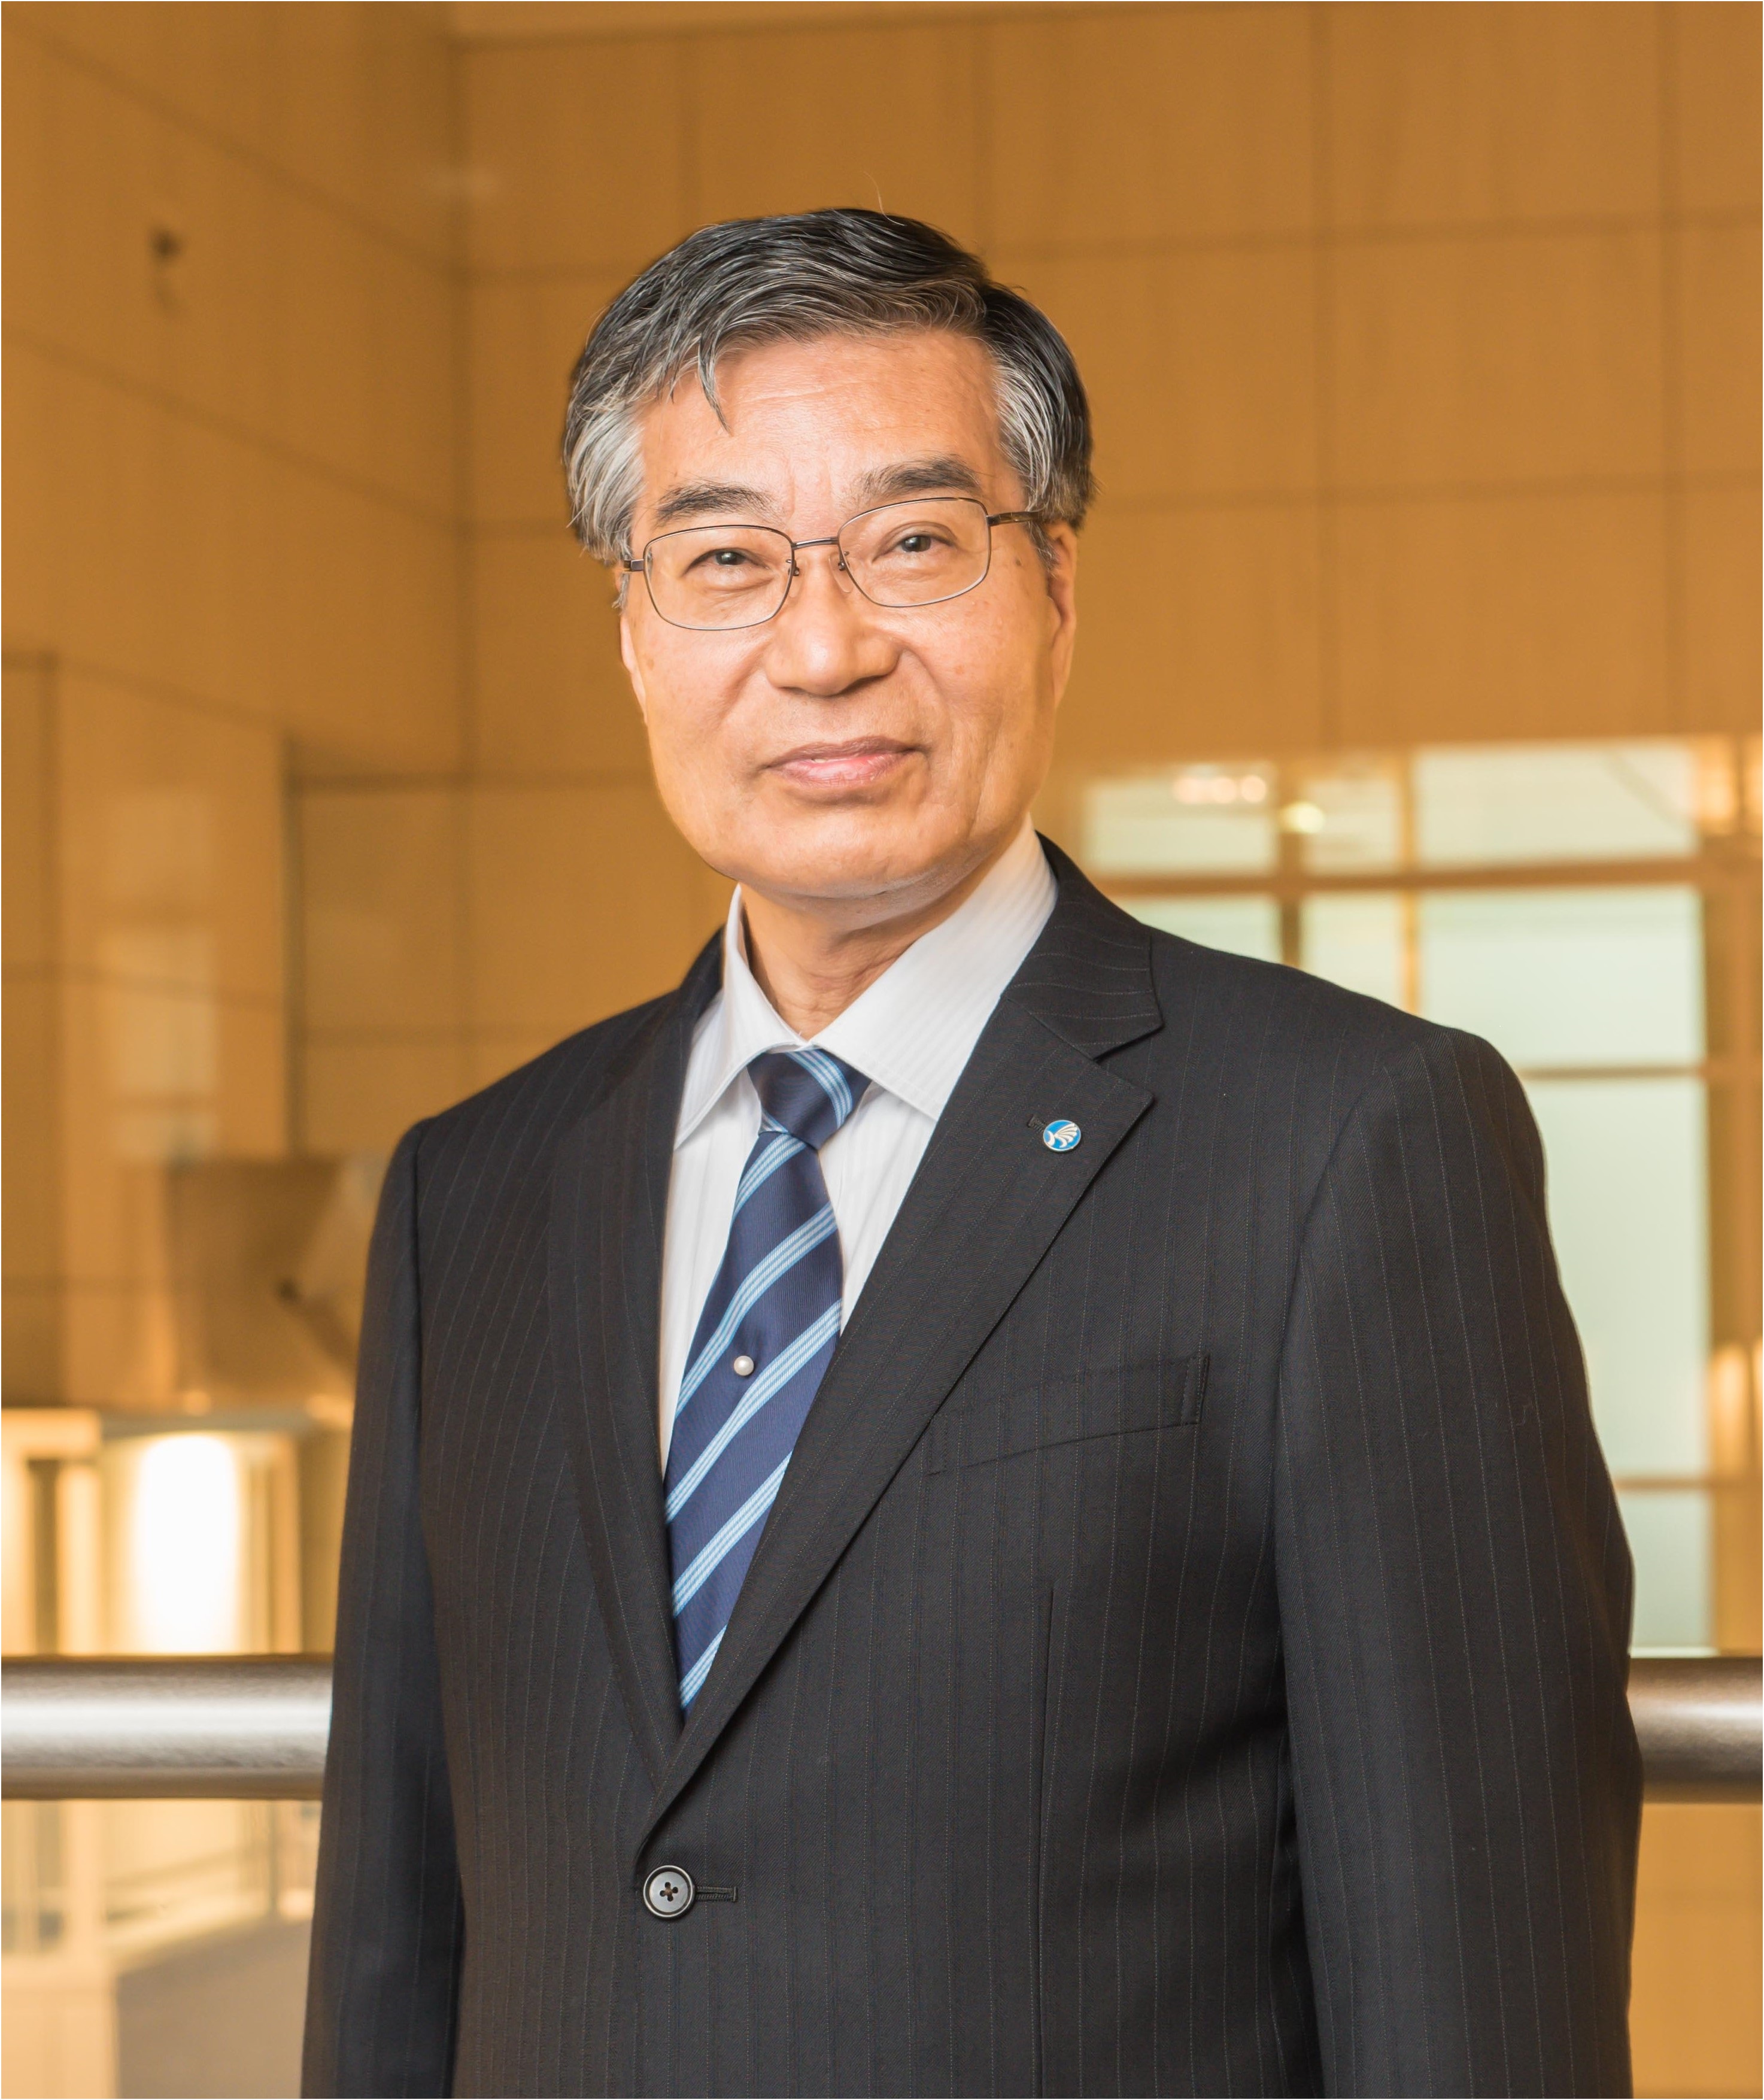 อิซาโอะ ทานิกุจิ ประธานสถาบันเทคโนโลยีแห่งชาติ สถาบันบริหารอิสระ